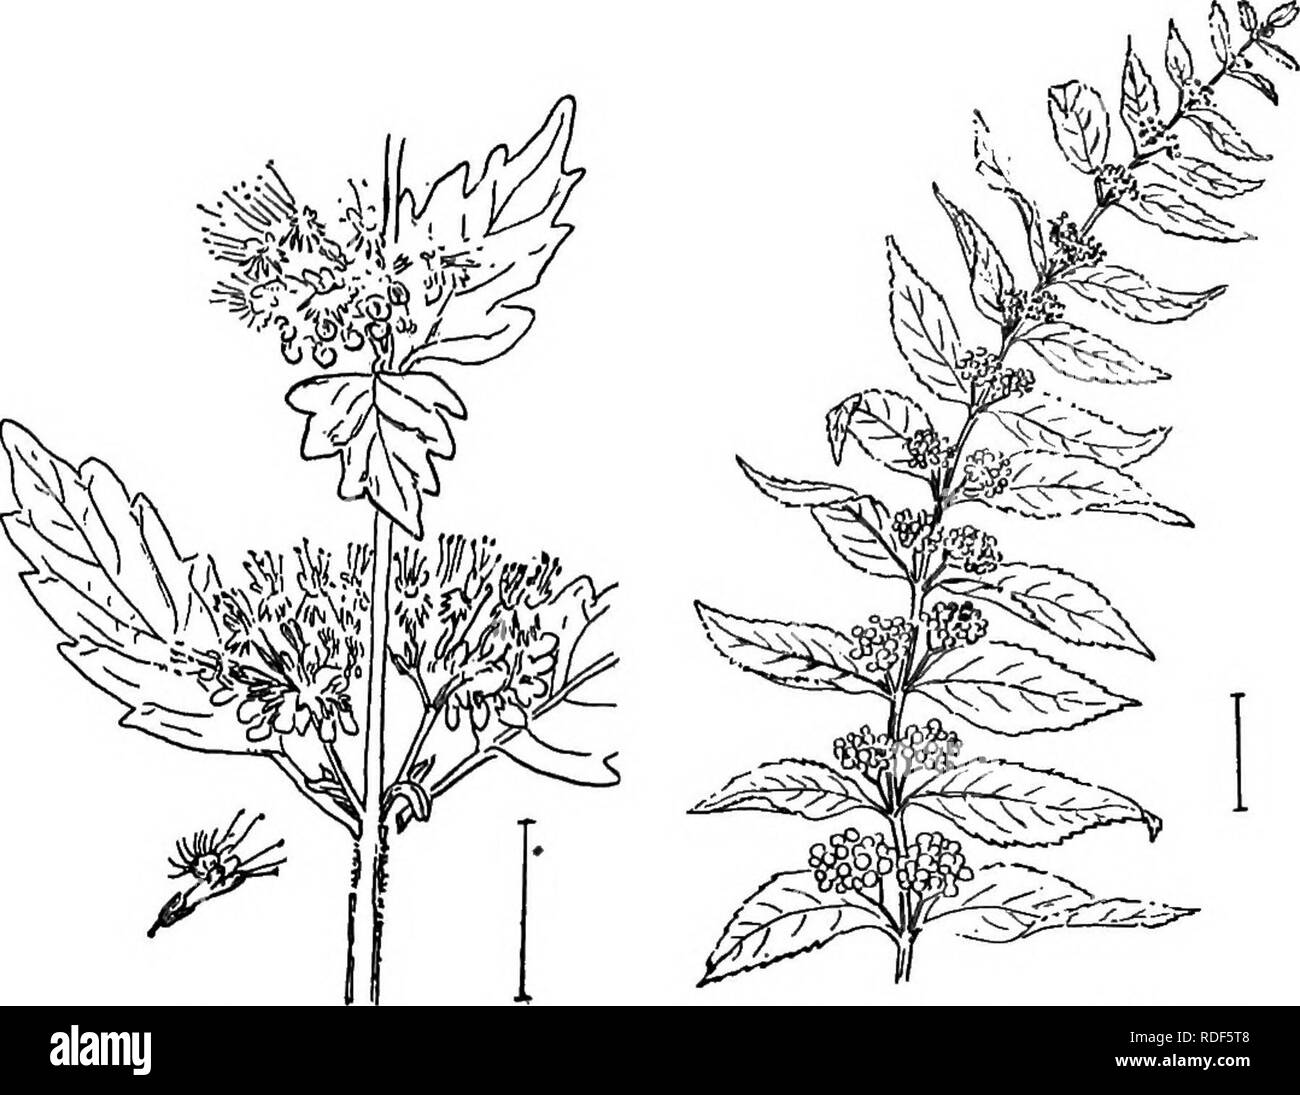 . Ziersträucher der Vereinigten Staaten (Hardy, kultiviert). Sträucher. VITEX 289 tief eingekerbte Blätter, und Axillären Cluster von Blau (oder weißen) Blumen in angepirscht Clustern. Die Blätter sind 2 bis 3 cm lang. Die Blüten haben einen 5-flügeligen schräg-umrandete Grenze und 4 hervorstehenden Staubgefäßen. Die Frucht der SEPA-Preise in 4 Samen - wie nutlets. (Genannt "Blau" Spirea" durch die Baumschule - Männer.) [Twig Stecklinge; Samen.] Calliciirpa. Die Callicarpas sind gegenüber-leaved Sträucher, mit Achsel-lary Cluster von kleinen, meist blauen Beeren, die auf hell bleiben. Abb. 502. - Der blaue pirea." Bild. 503. - Amerikanische Callicarpa. thr Stockfoto